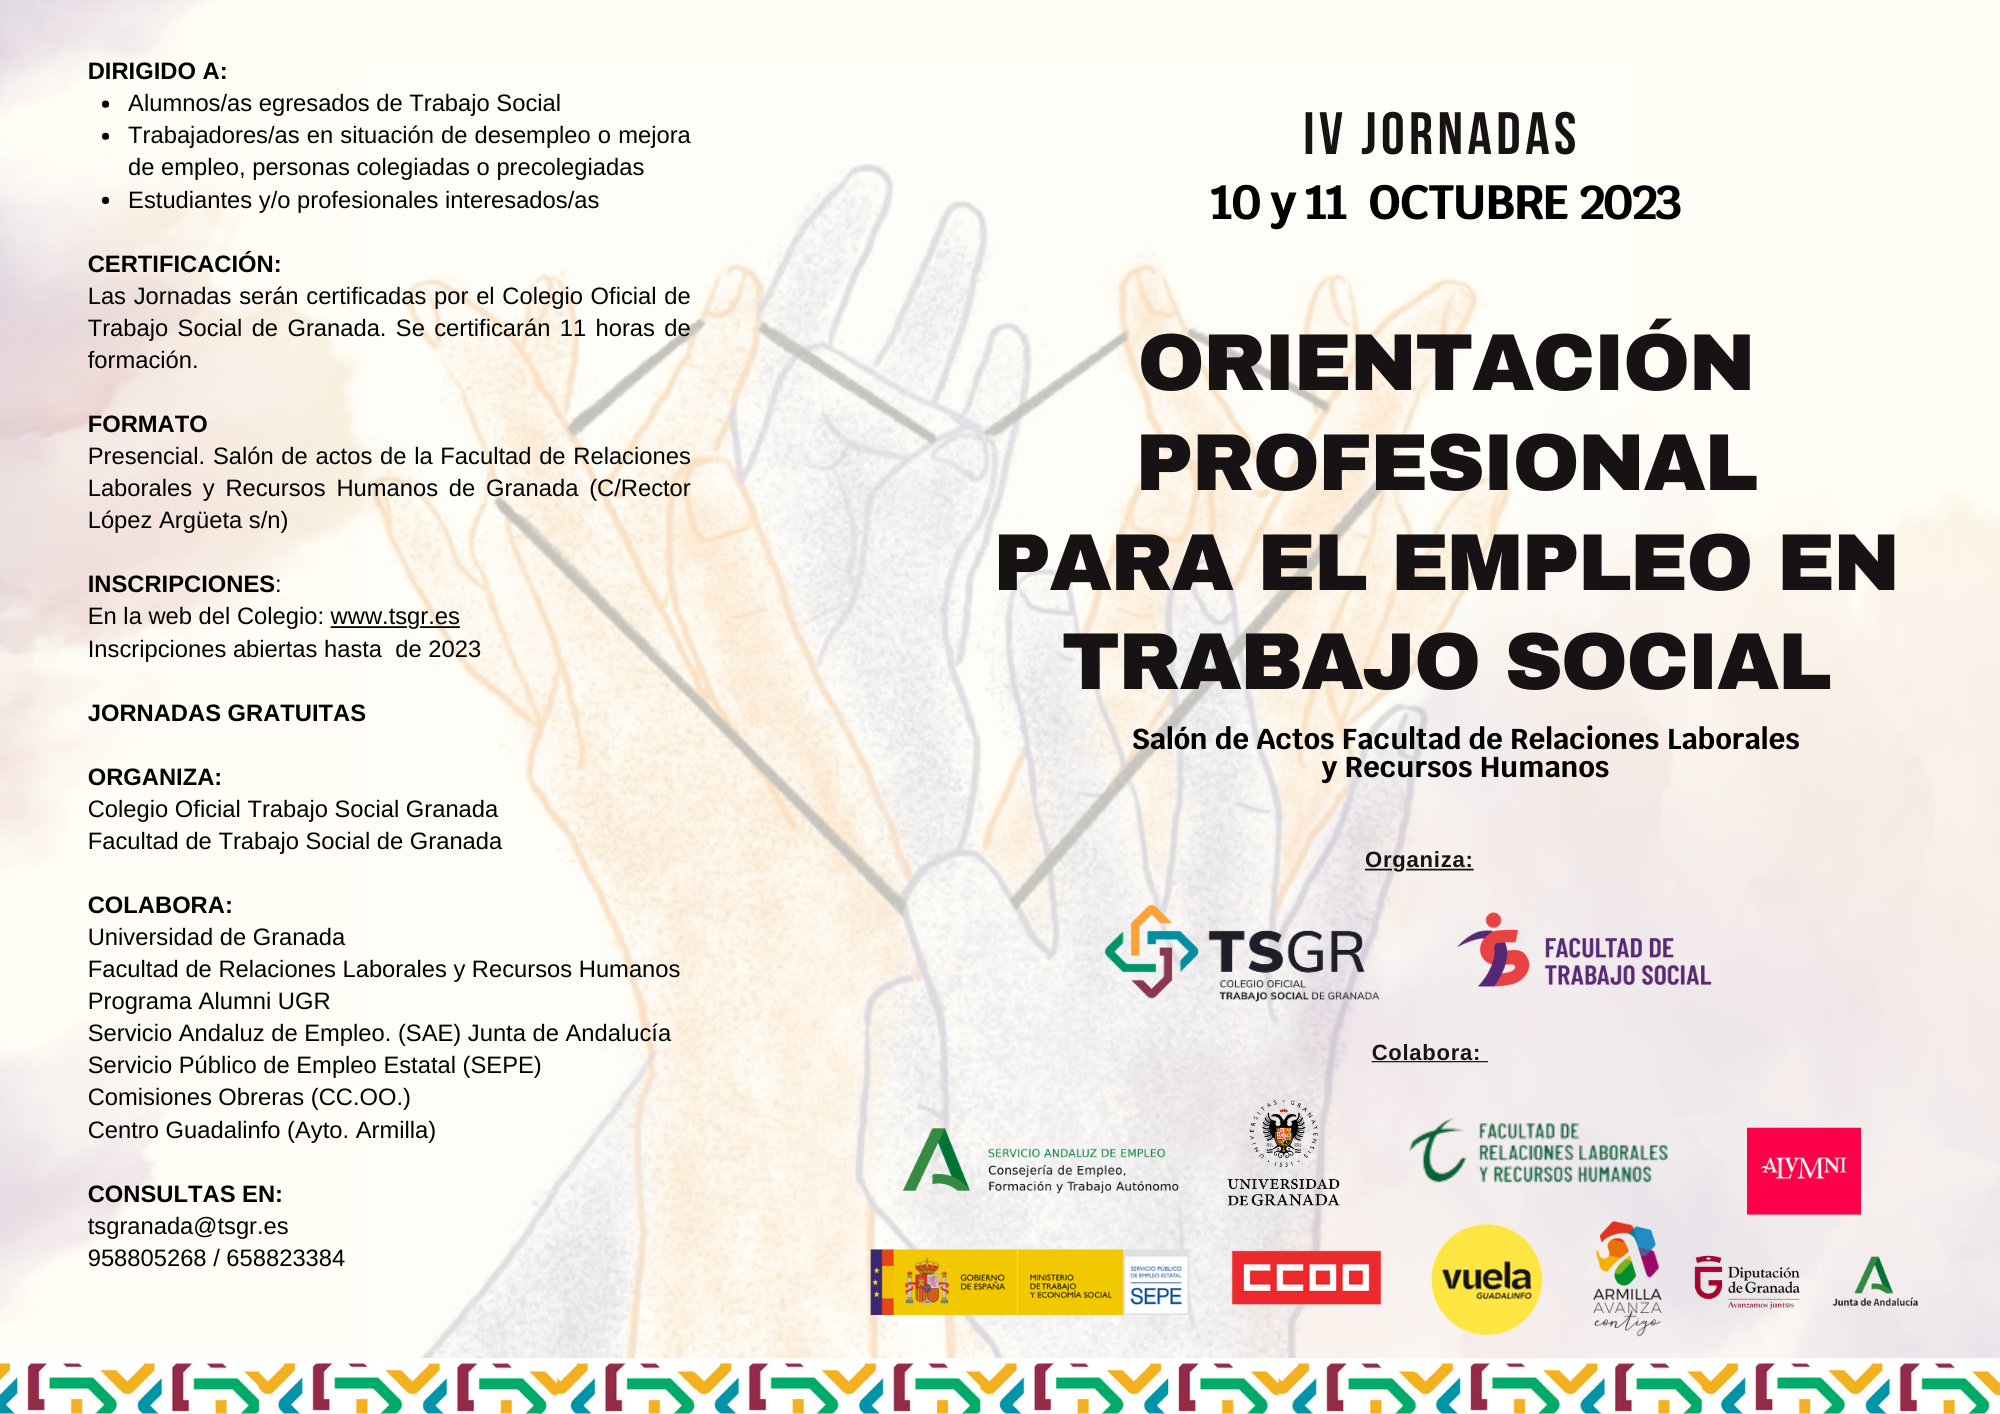 Los próximos 10 y 11 de octubre tendrán lugar las IV JORNADAS DE ORIENTACIÓN PROFESIONAL PARA EL EMPLEO EN TRABAJO SOCIAL